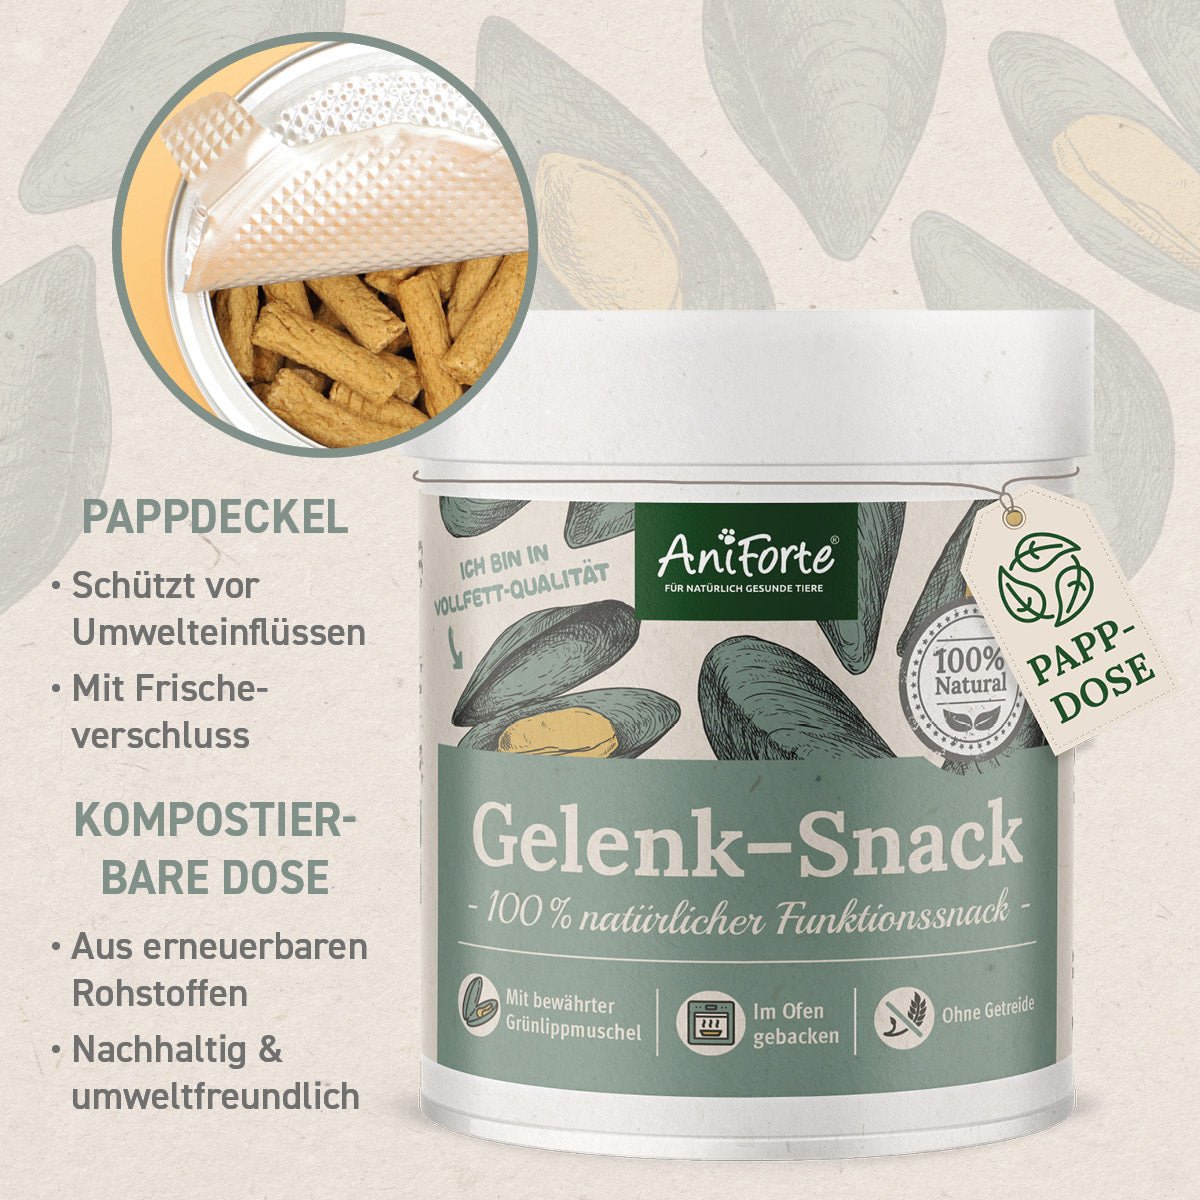 Gelenk-Snack in Kompostierbarer Dose und Pappdeckel mit Frischeverschluss